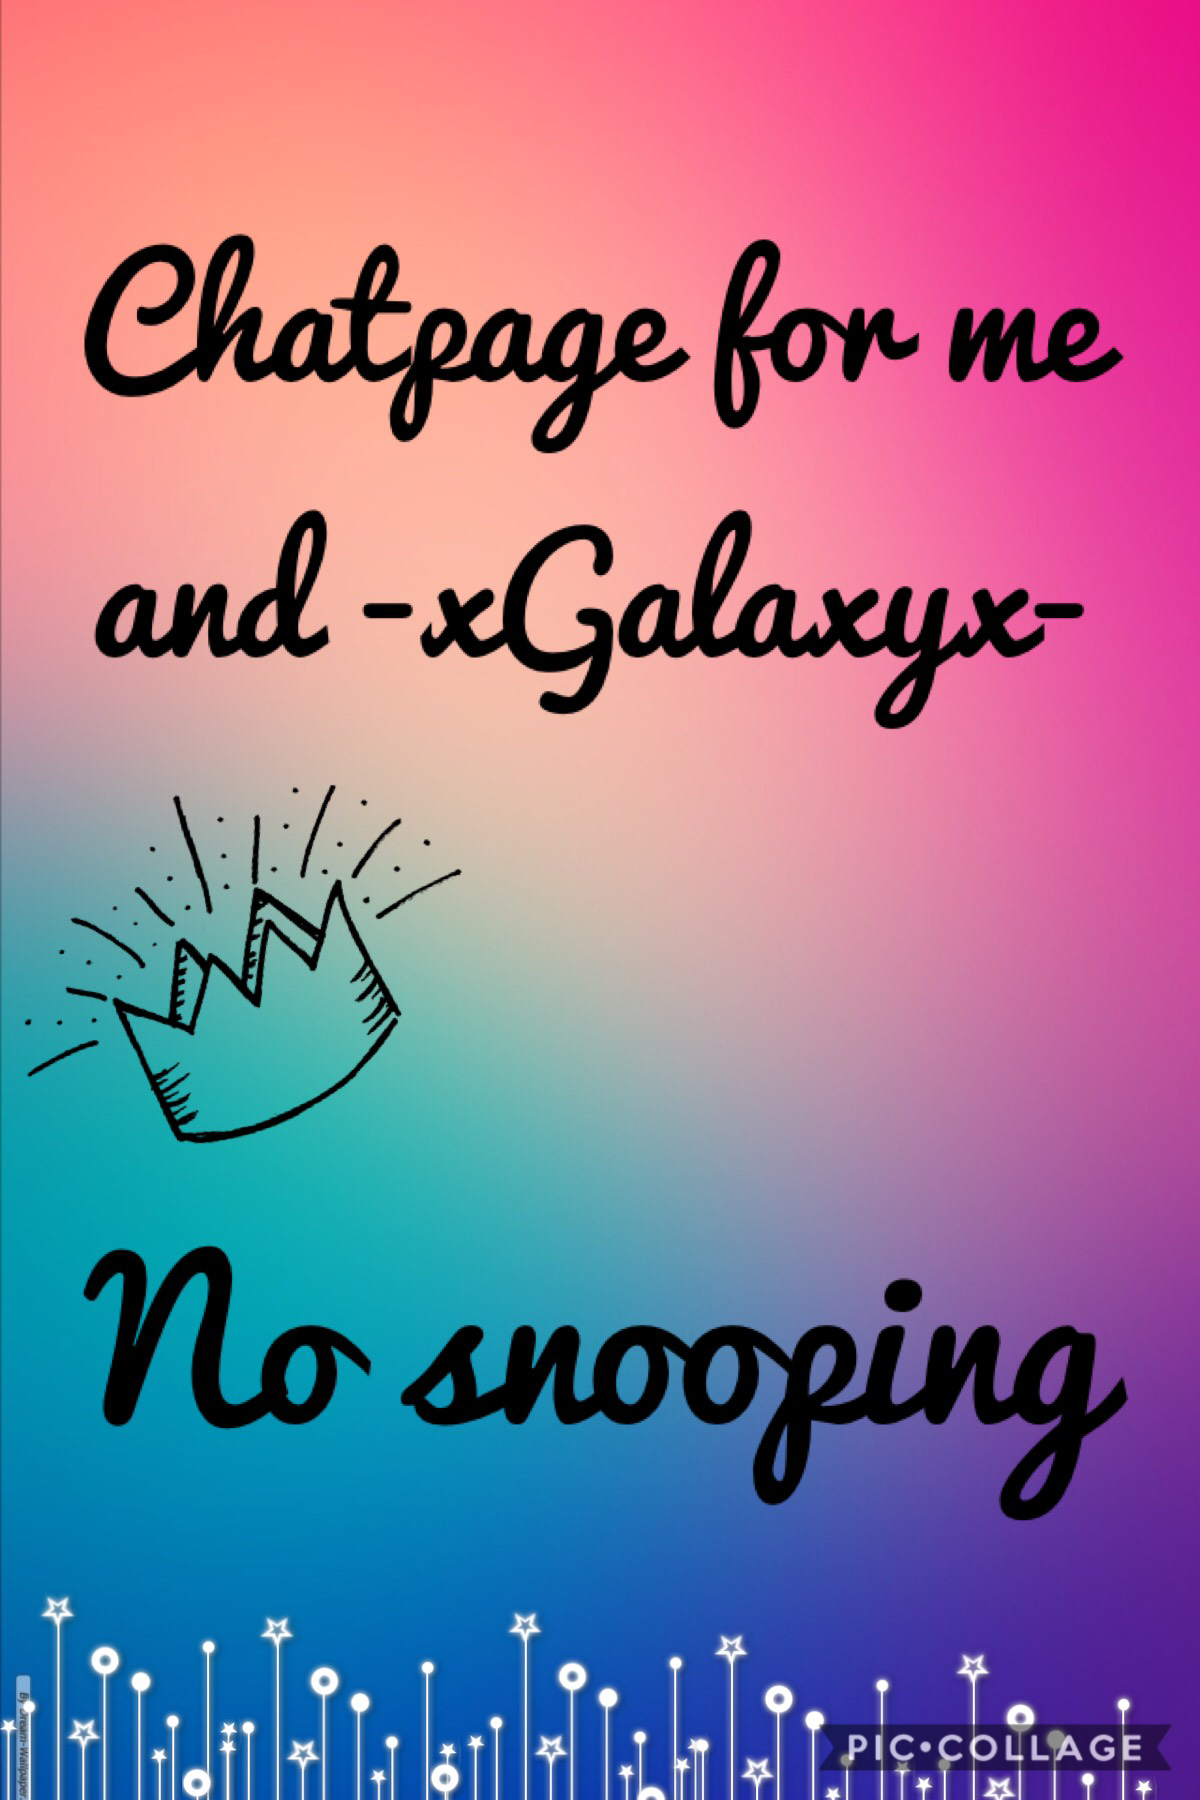 No snooping